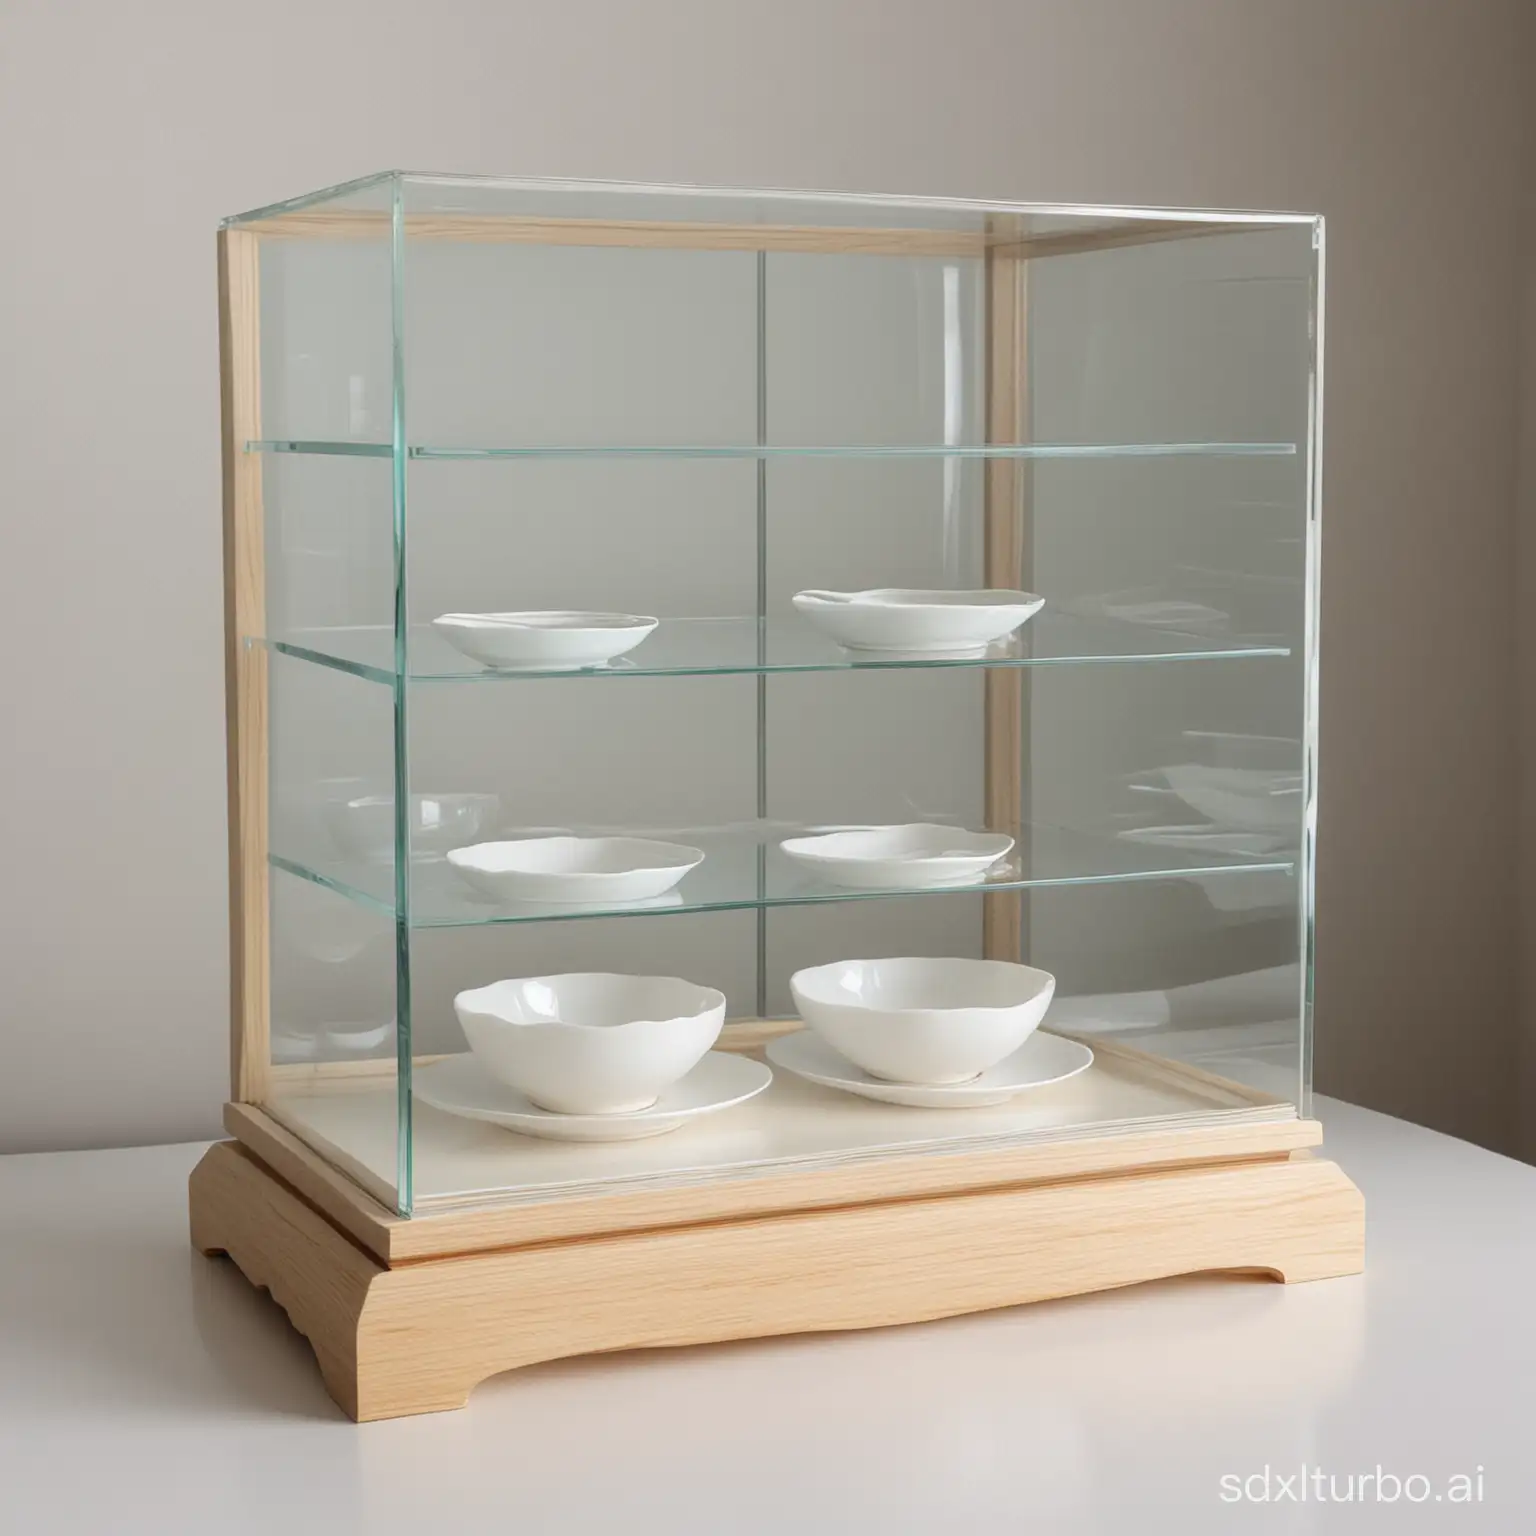 一个高大约30cm的玻璃展示柜，只有一层，不要两层，可以很长，后背是不透明的白色，玻璃柜里面展示的有一个白色的面碗，一个白色的饭碗，一个白色的盘子，，和一个白色的杯子，